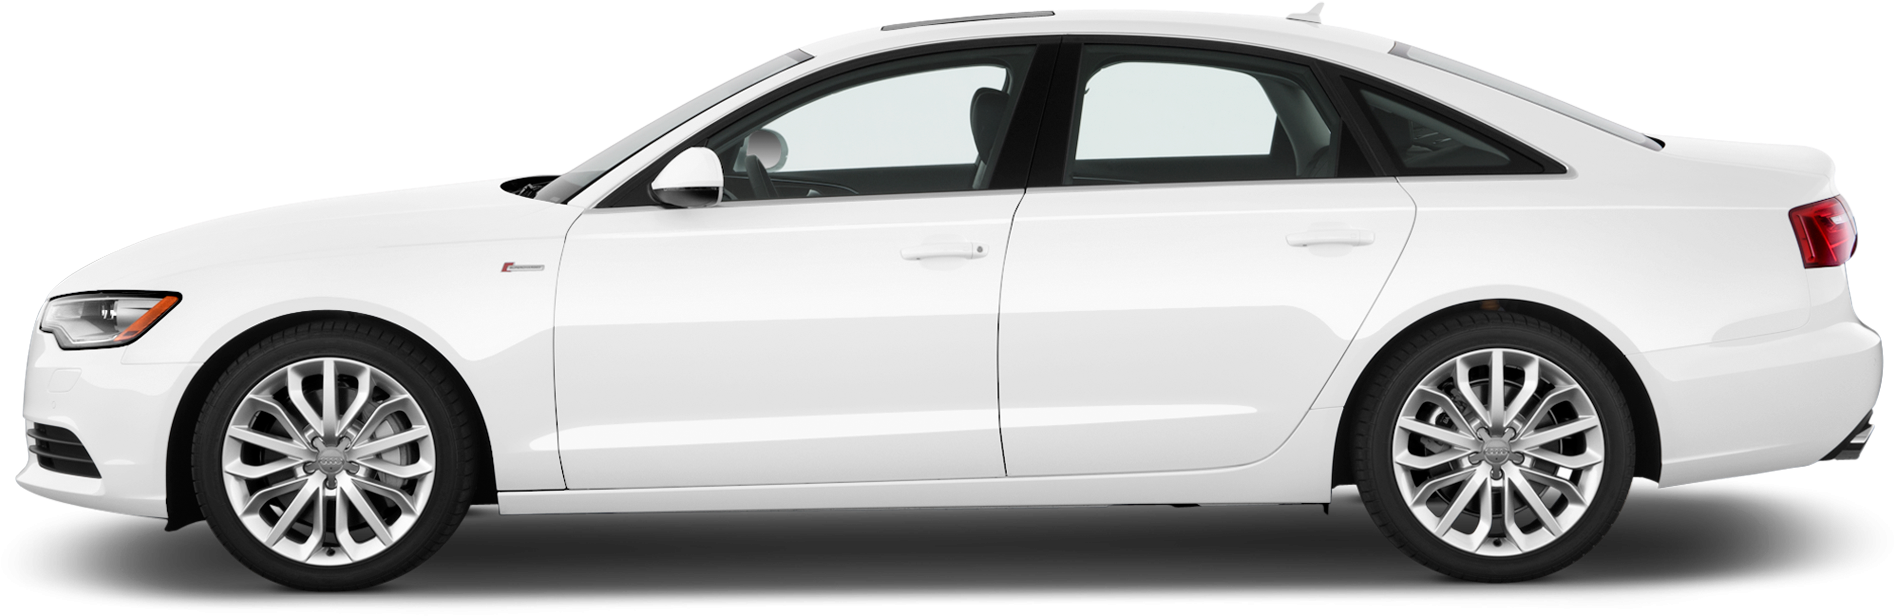 Branco Audi A6 PNG imagem de alta qualidade